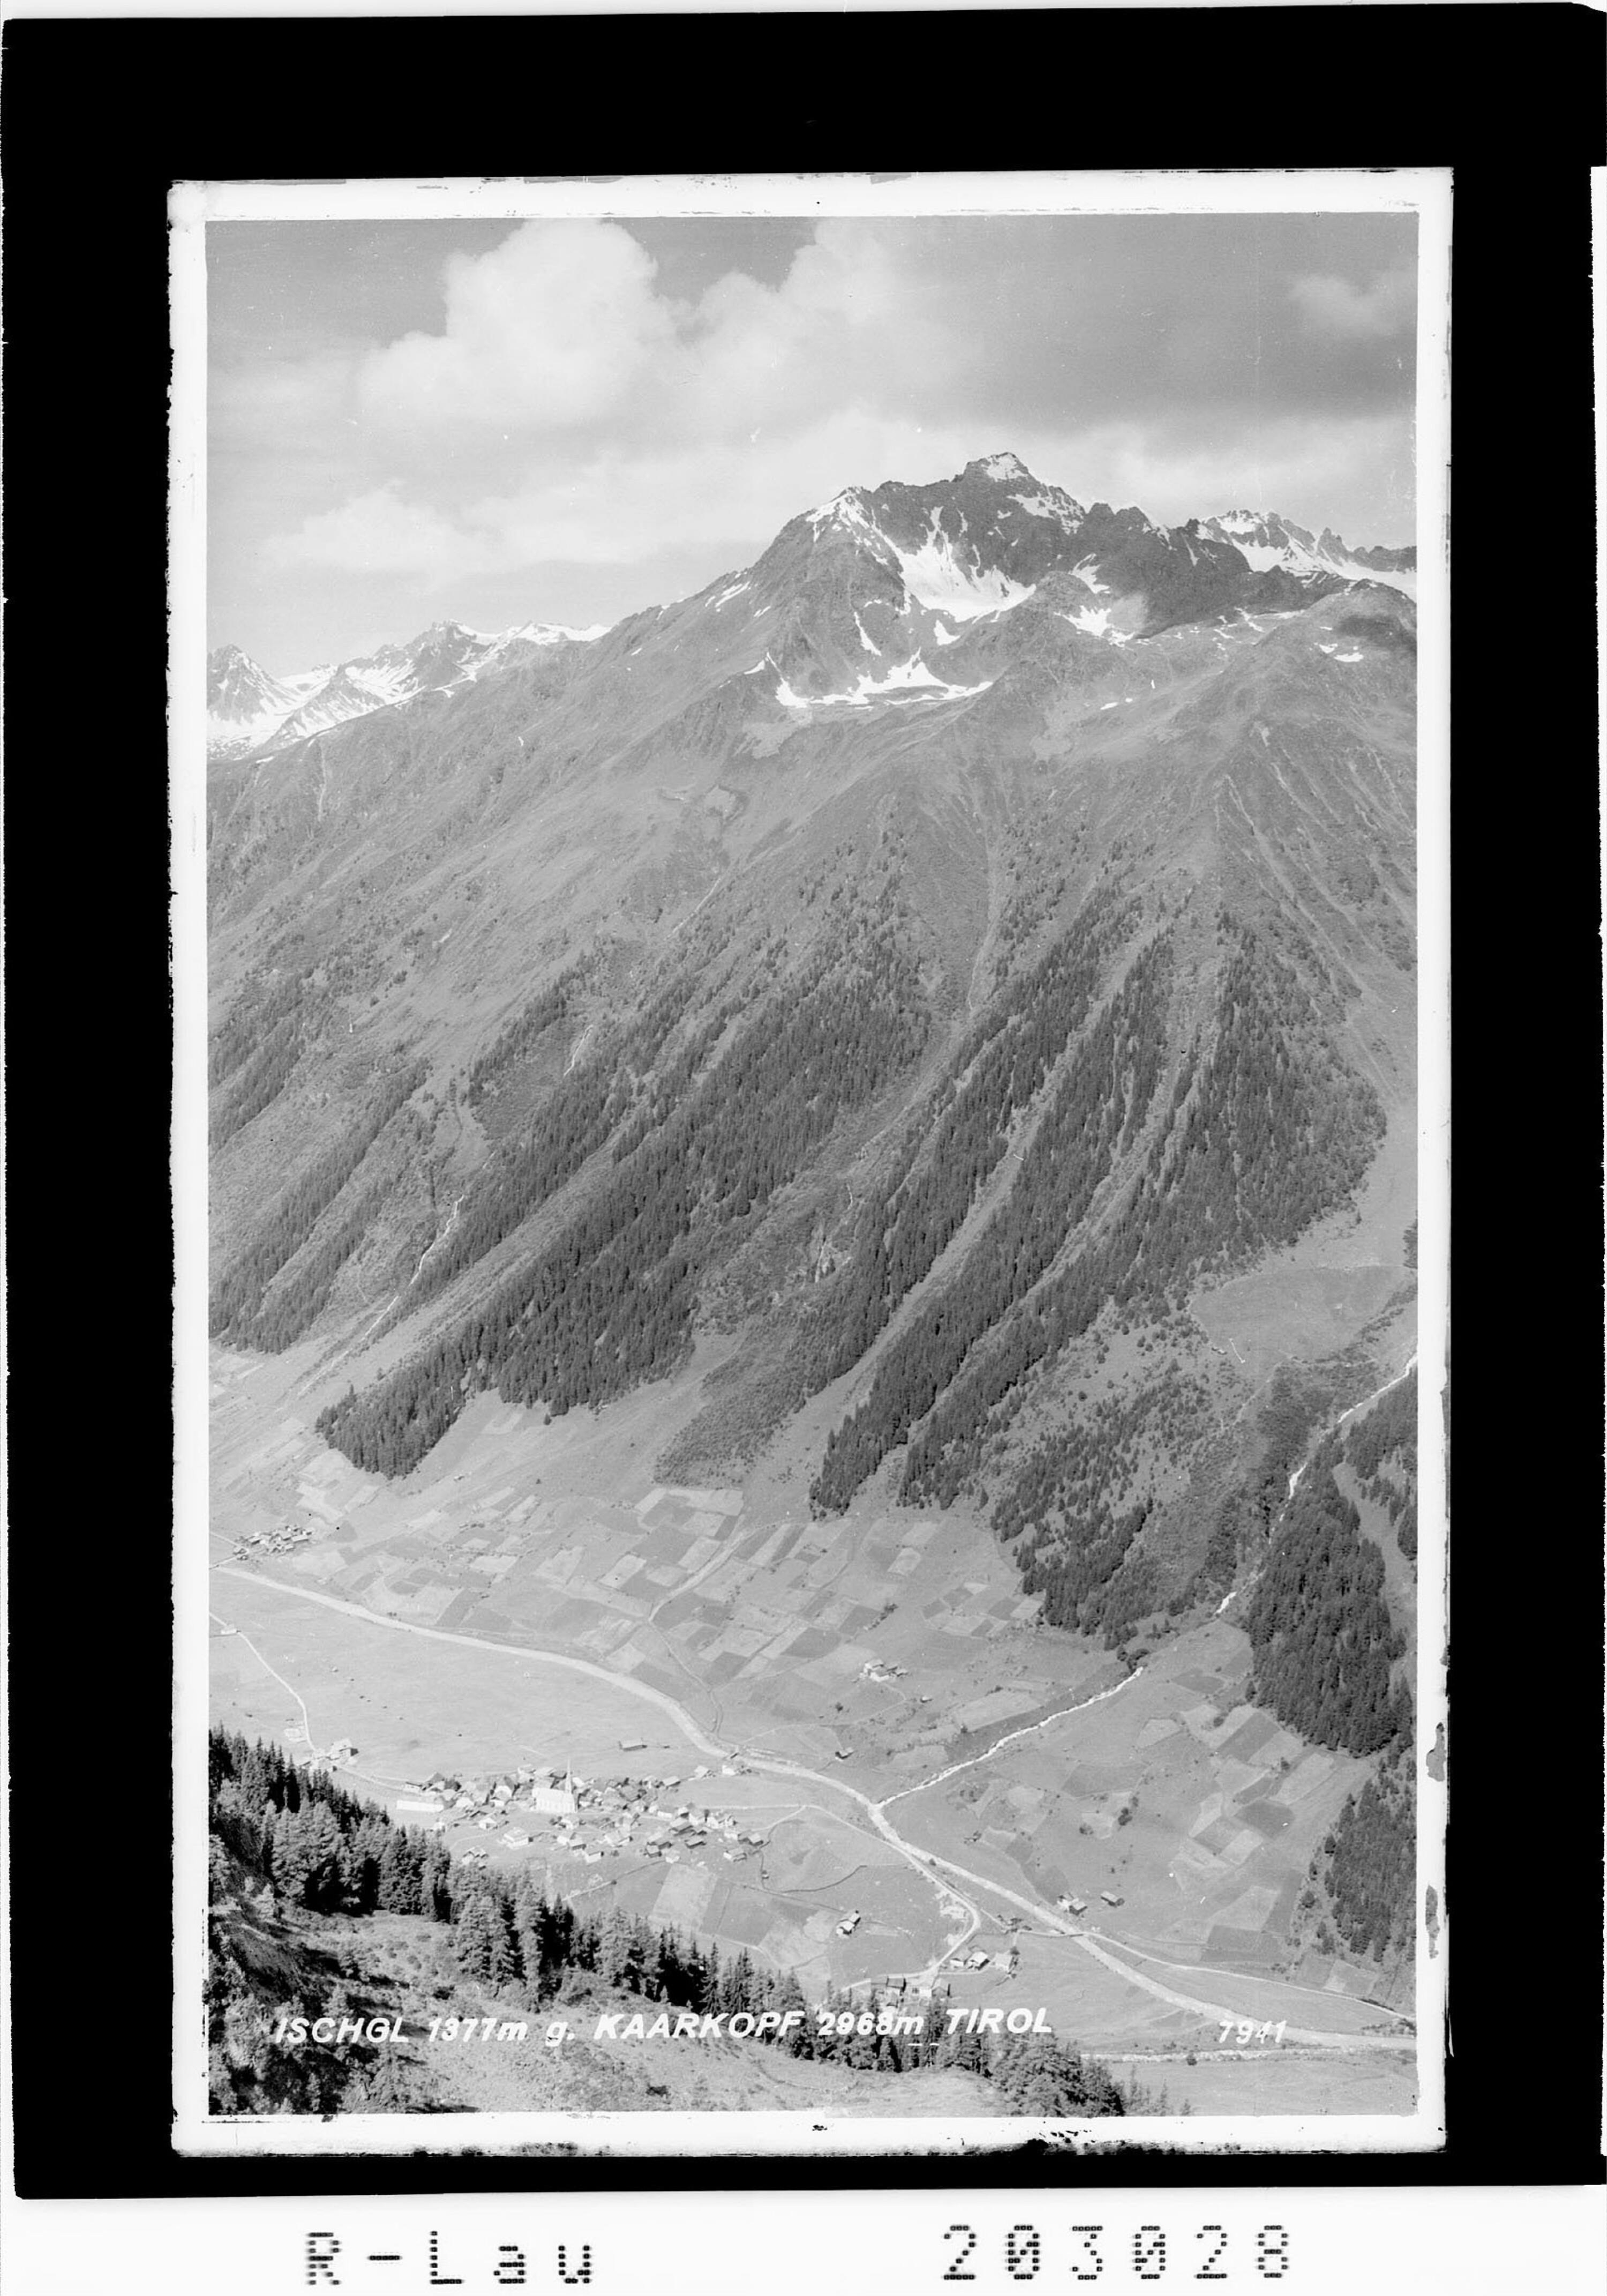 Ischgl 1377 m gegen Kaarkopf 2968 m Tirol></div>


    <hr>
    <div class=